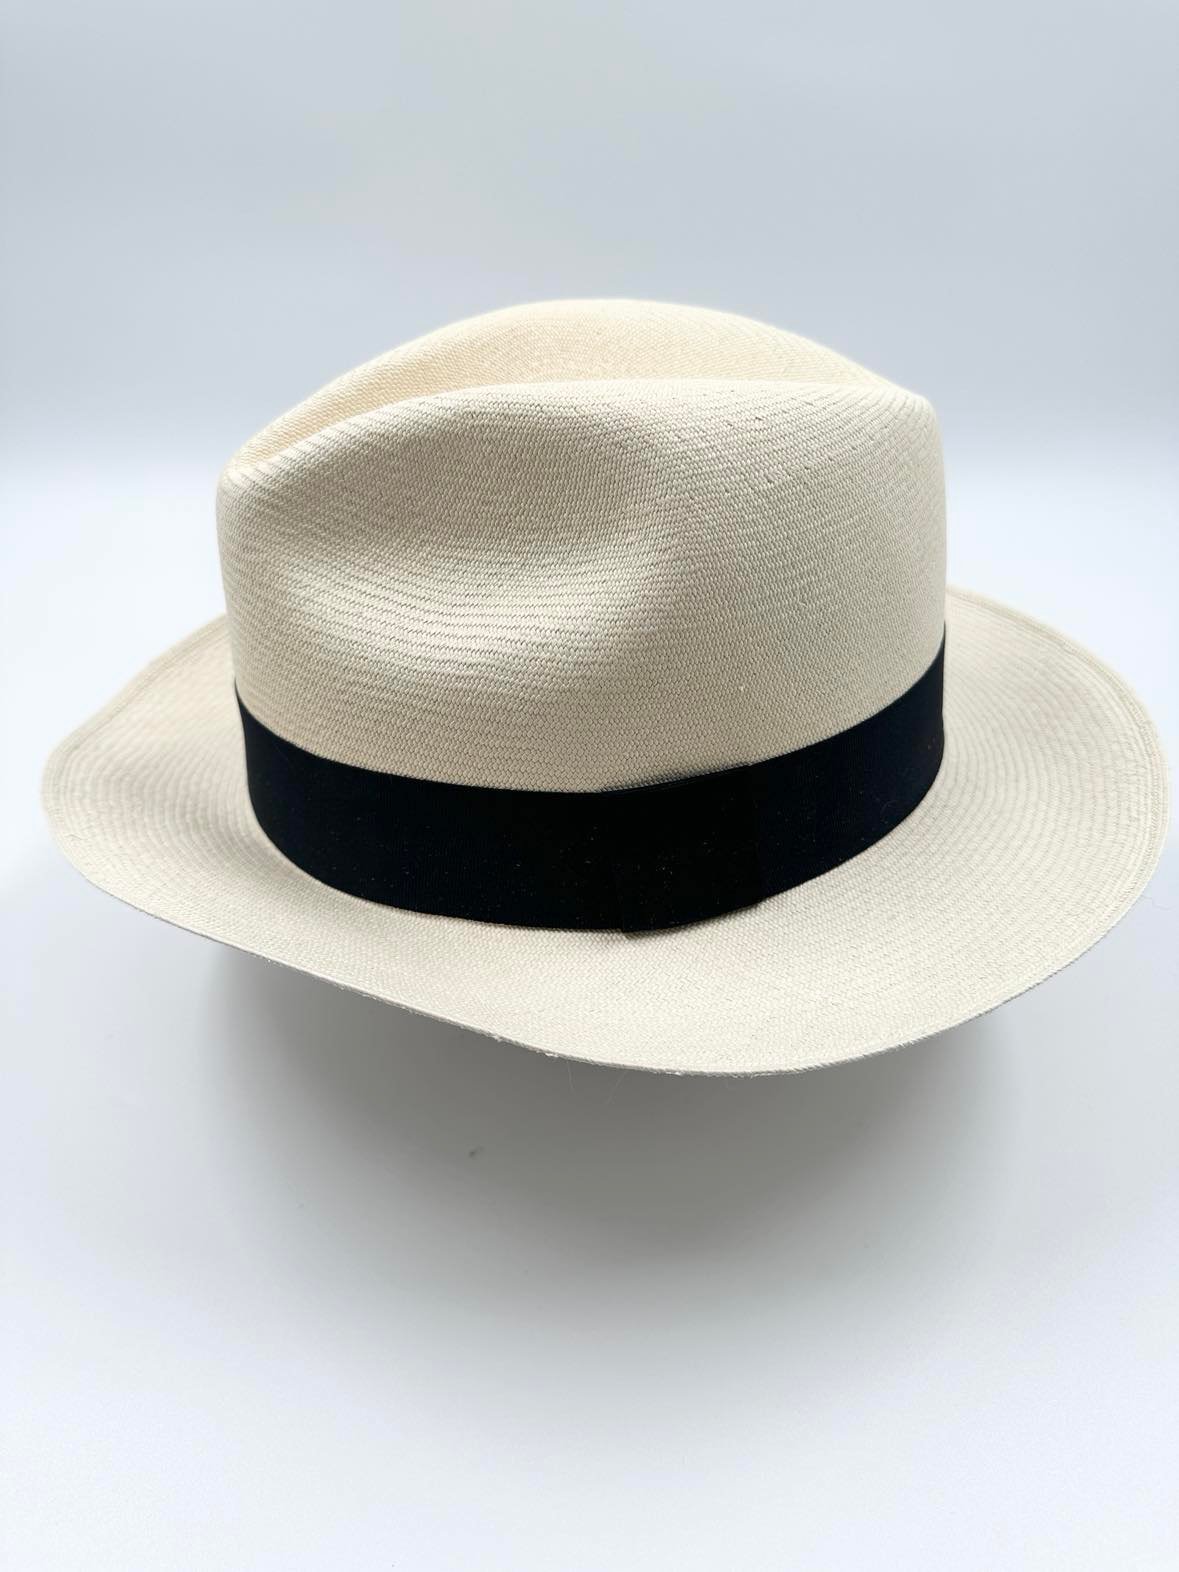 Ægte Montecristi Fedora Panama Hat med en kvalitet på 21-22 fletninger pr. inch - håndflettet for en unik hat - ingen hatte er ens